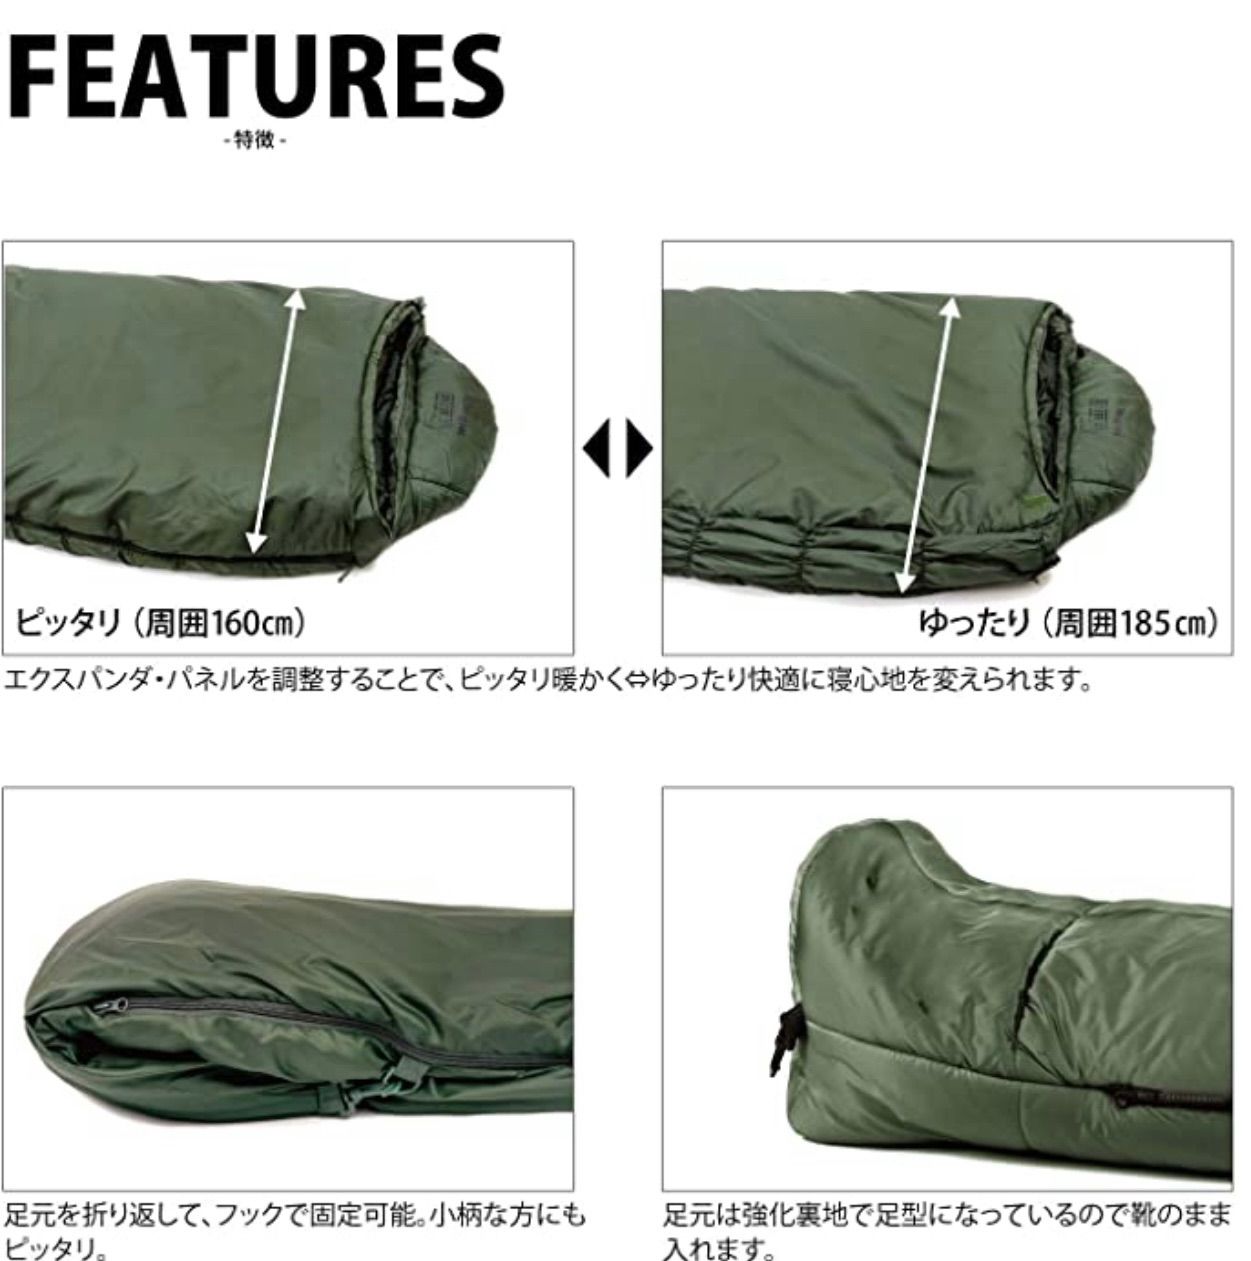 2022年最新海外 Snugpak(スナグパック) 寝袋 ソフティー3 マーリン ライトジップ オリーブ [快適使用温度5度] (日本正規品) ワンサイズ